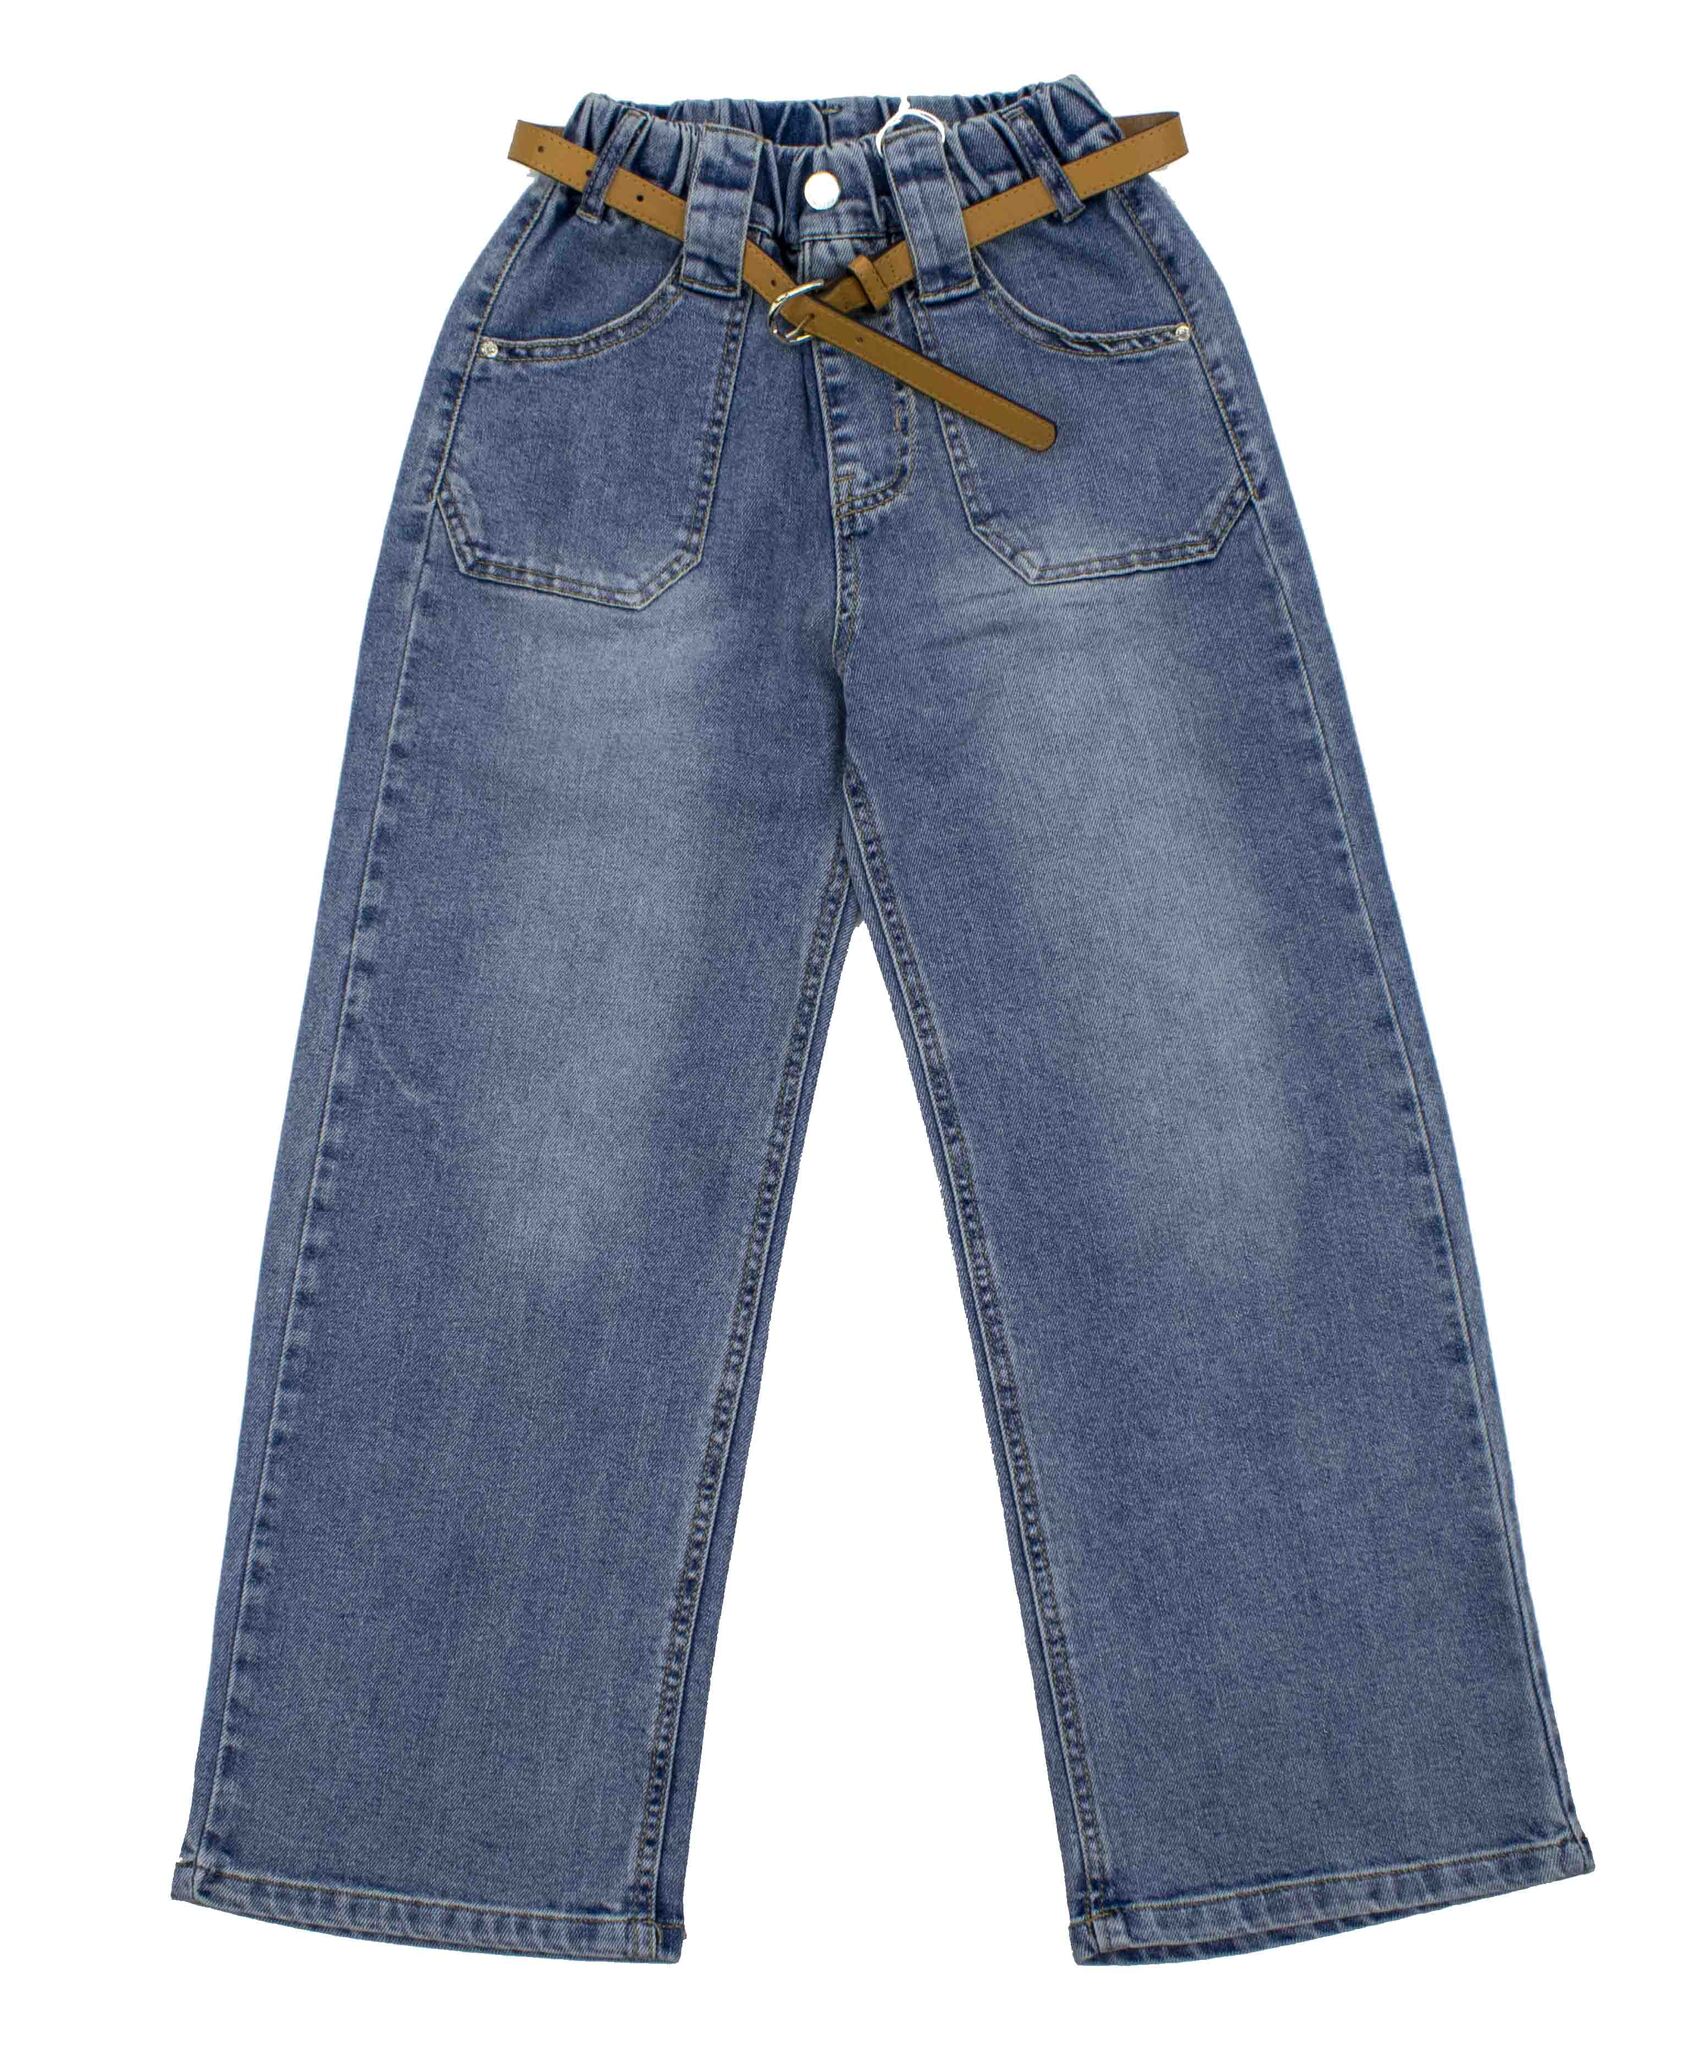 4461  джинсы на резинке Карманы